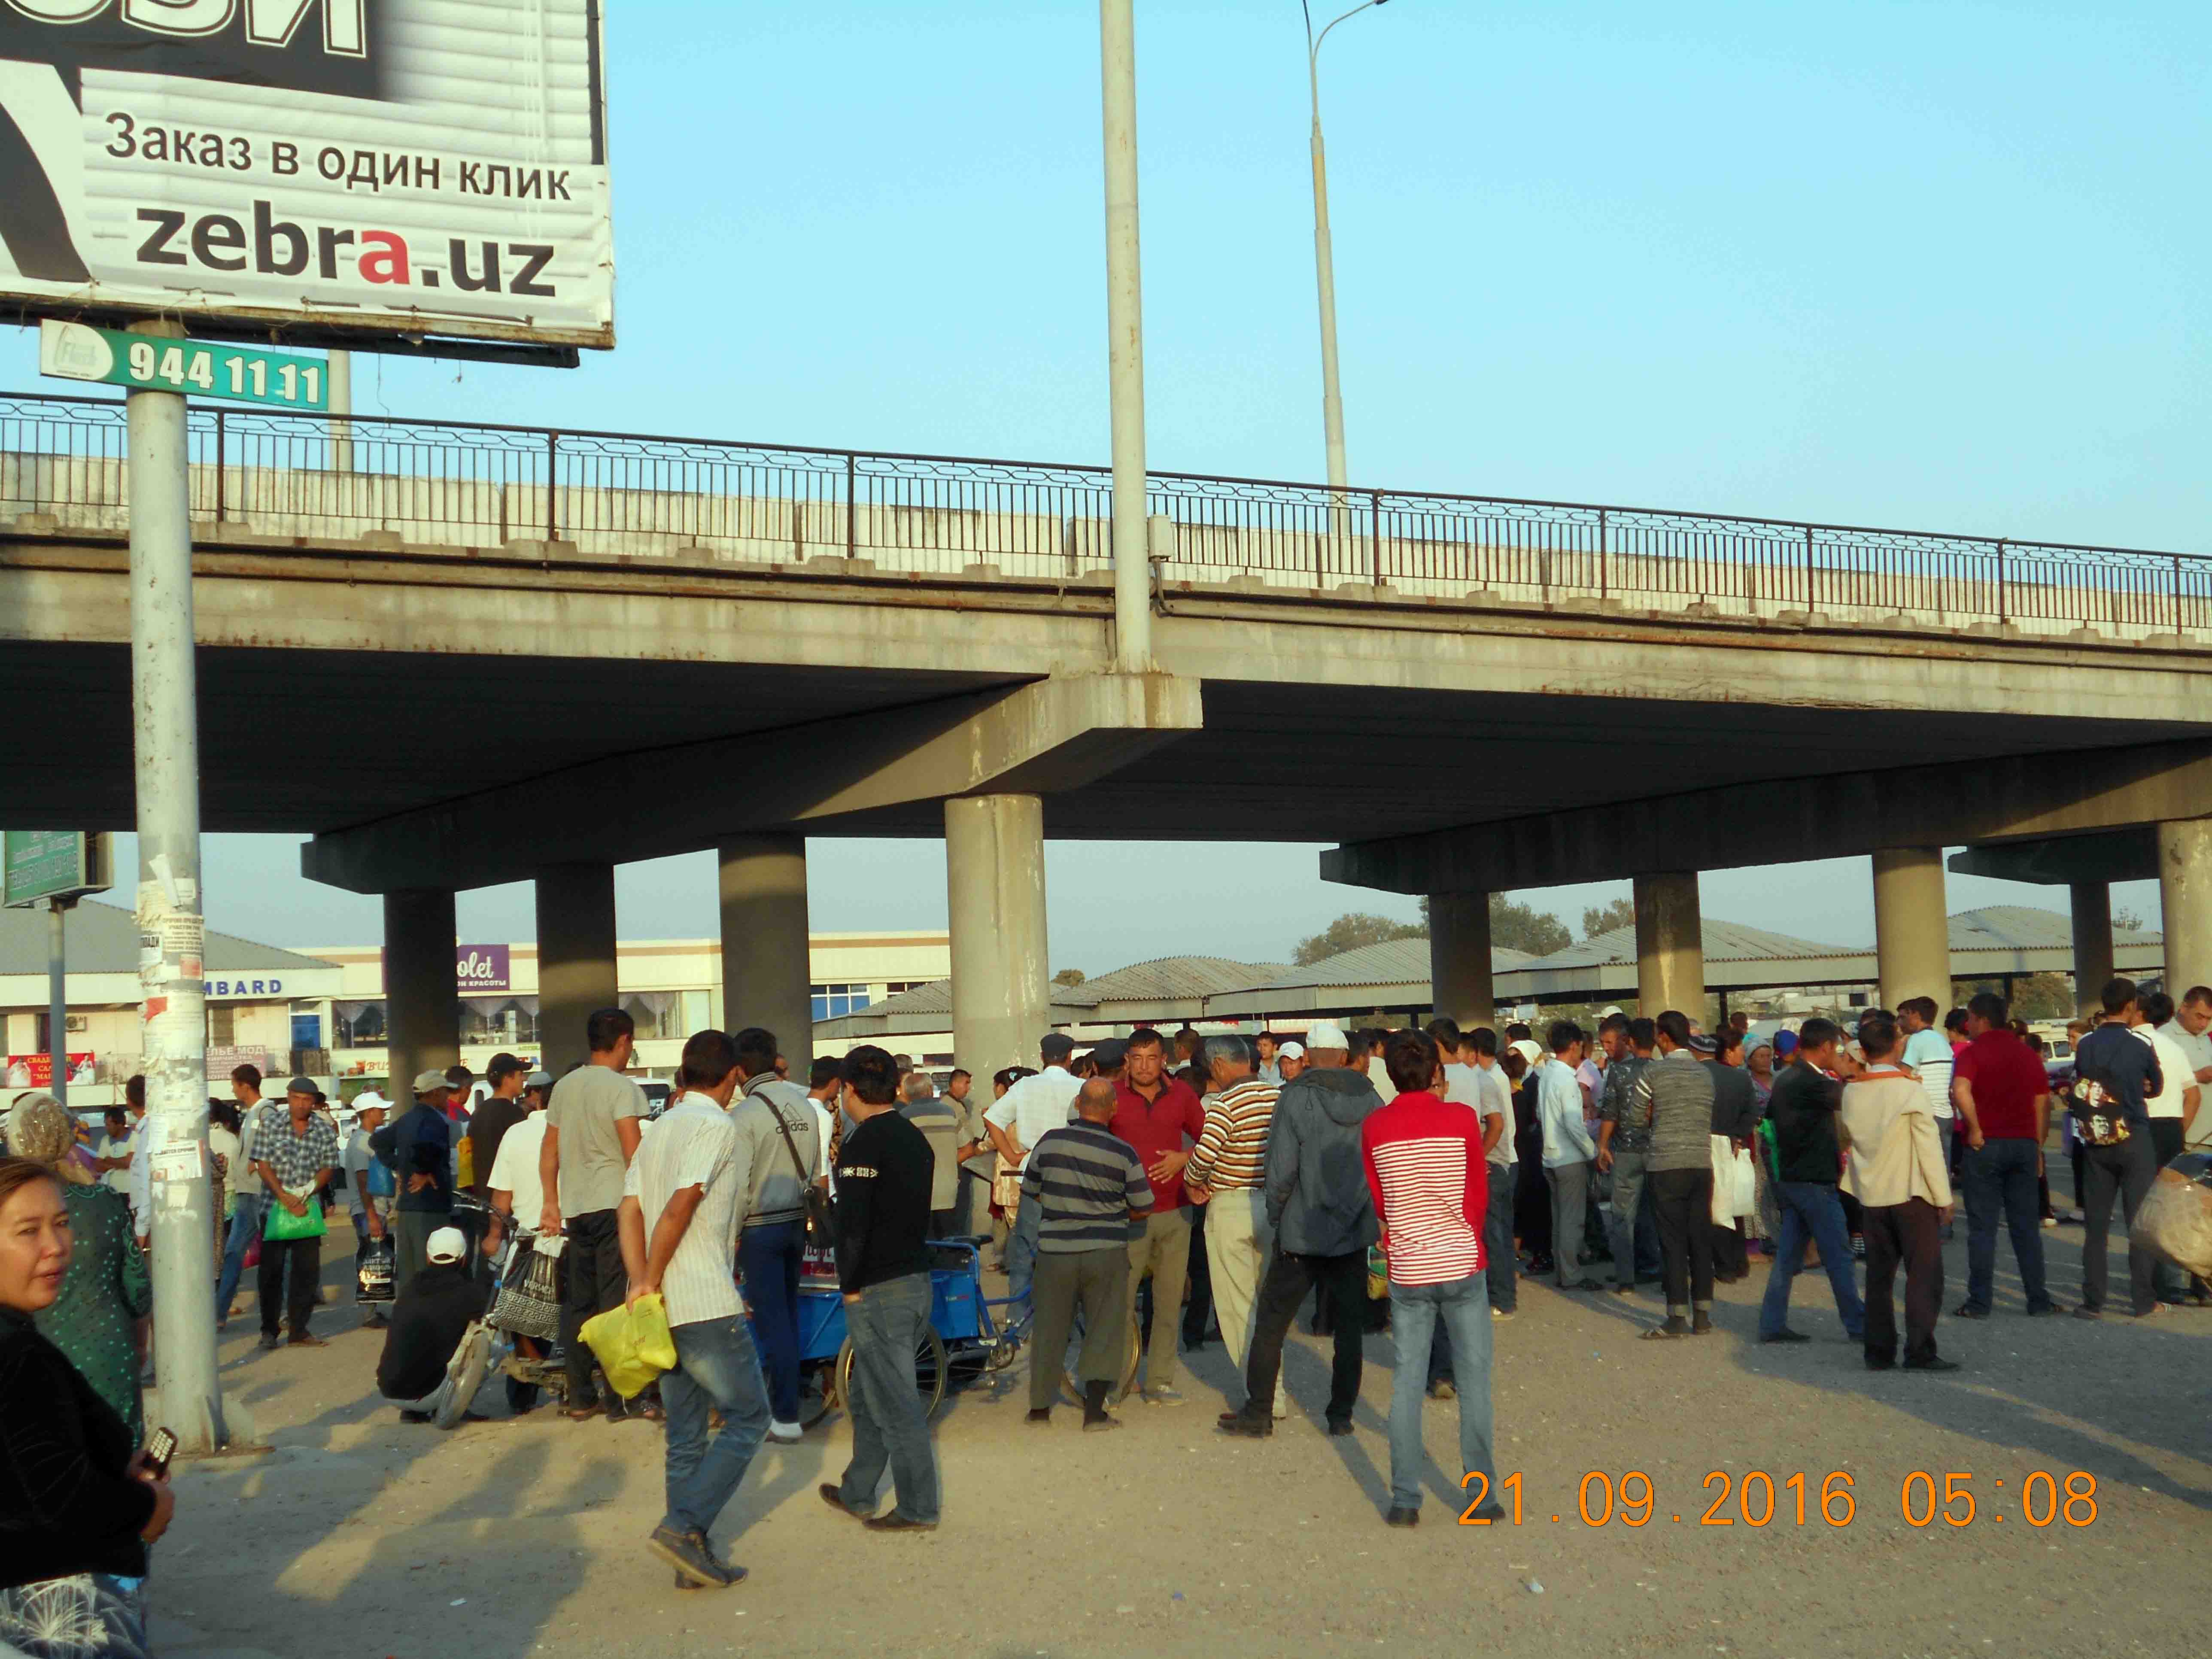 Безработные в Ташкенте в ожидании случайных заработков; фото: Правозащитный альянс Узбекистана